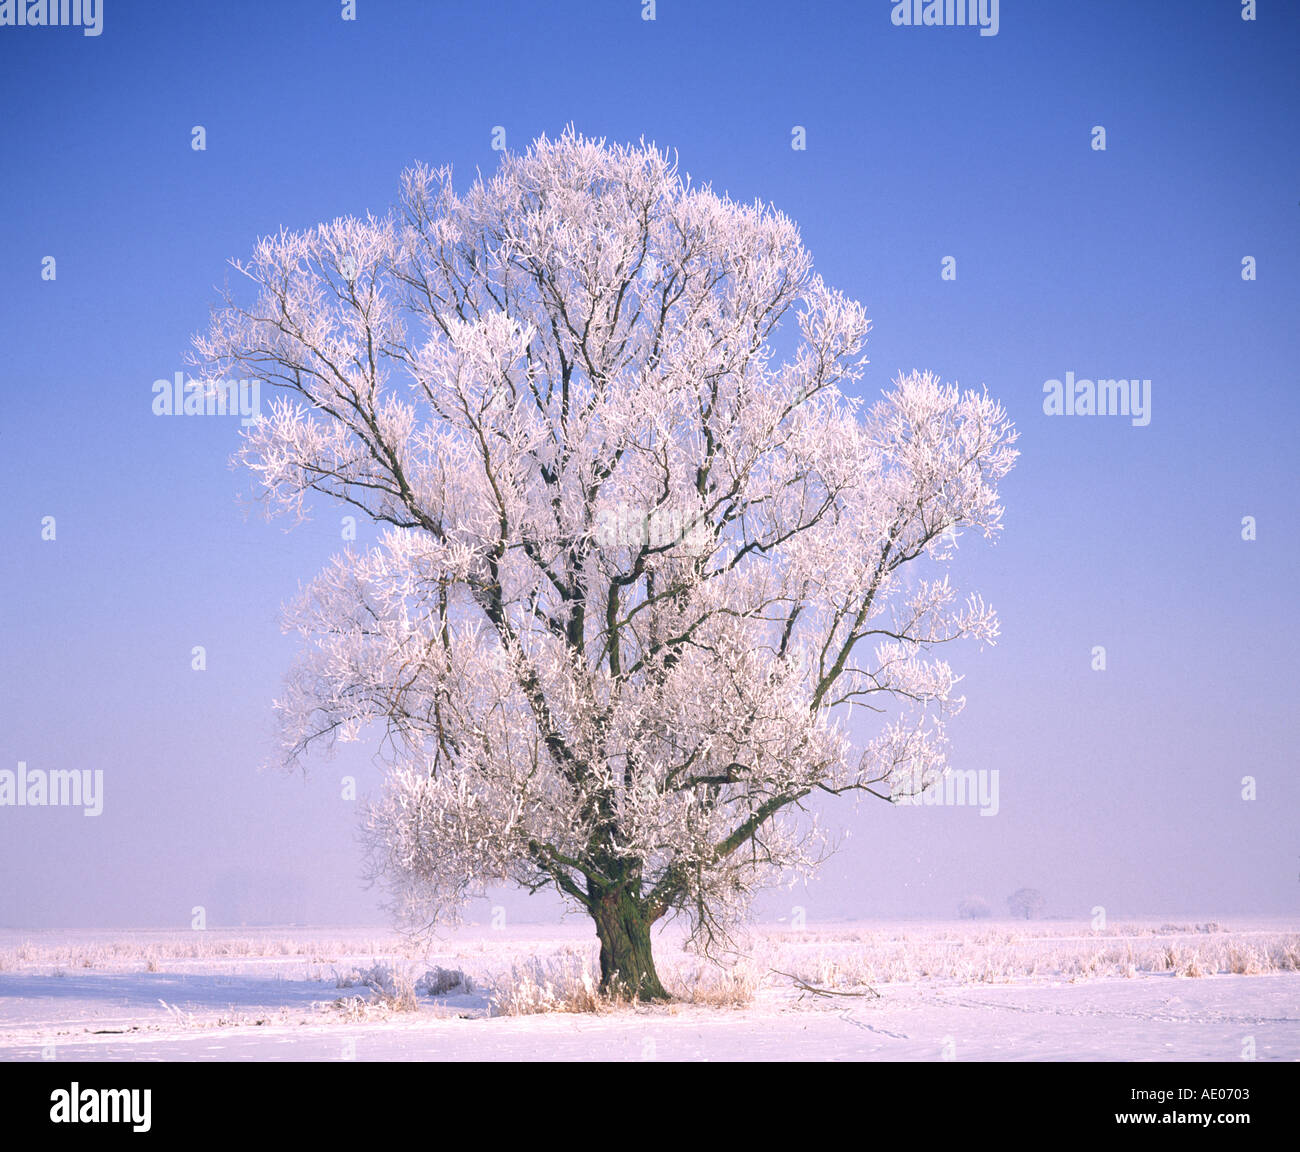 Eiskristalle auf Laubbaum cristales de hielo en una amplia dejados tree Foto de stock